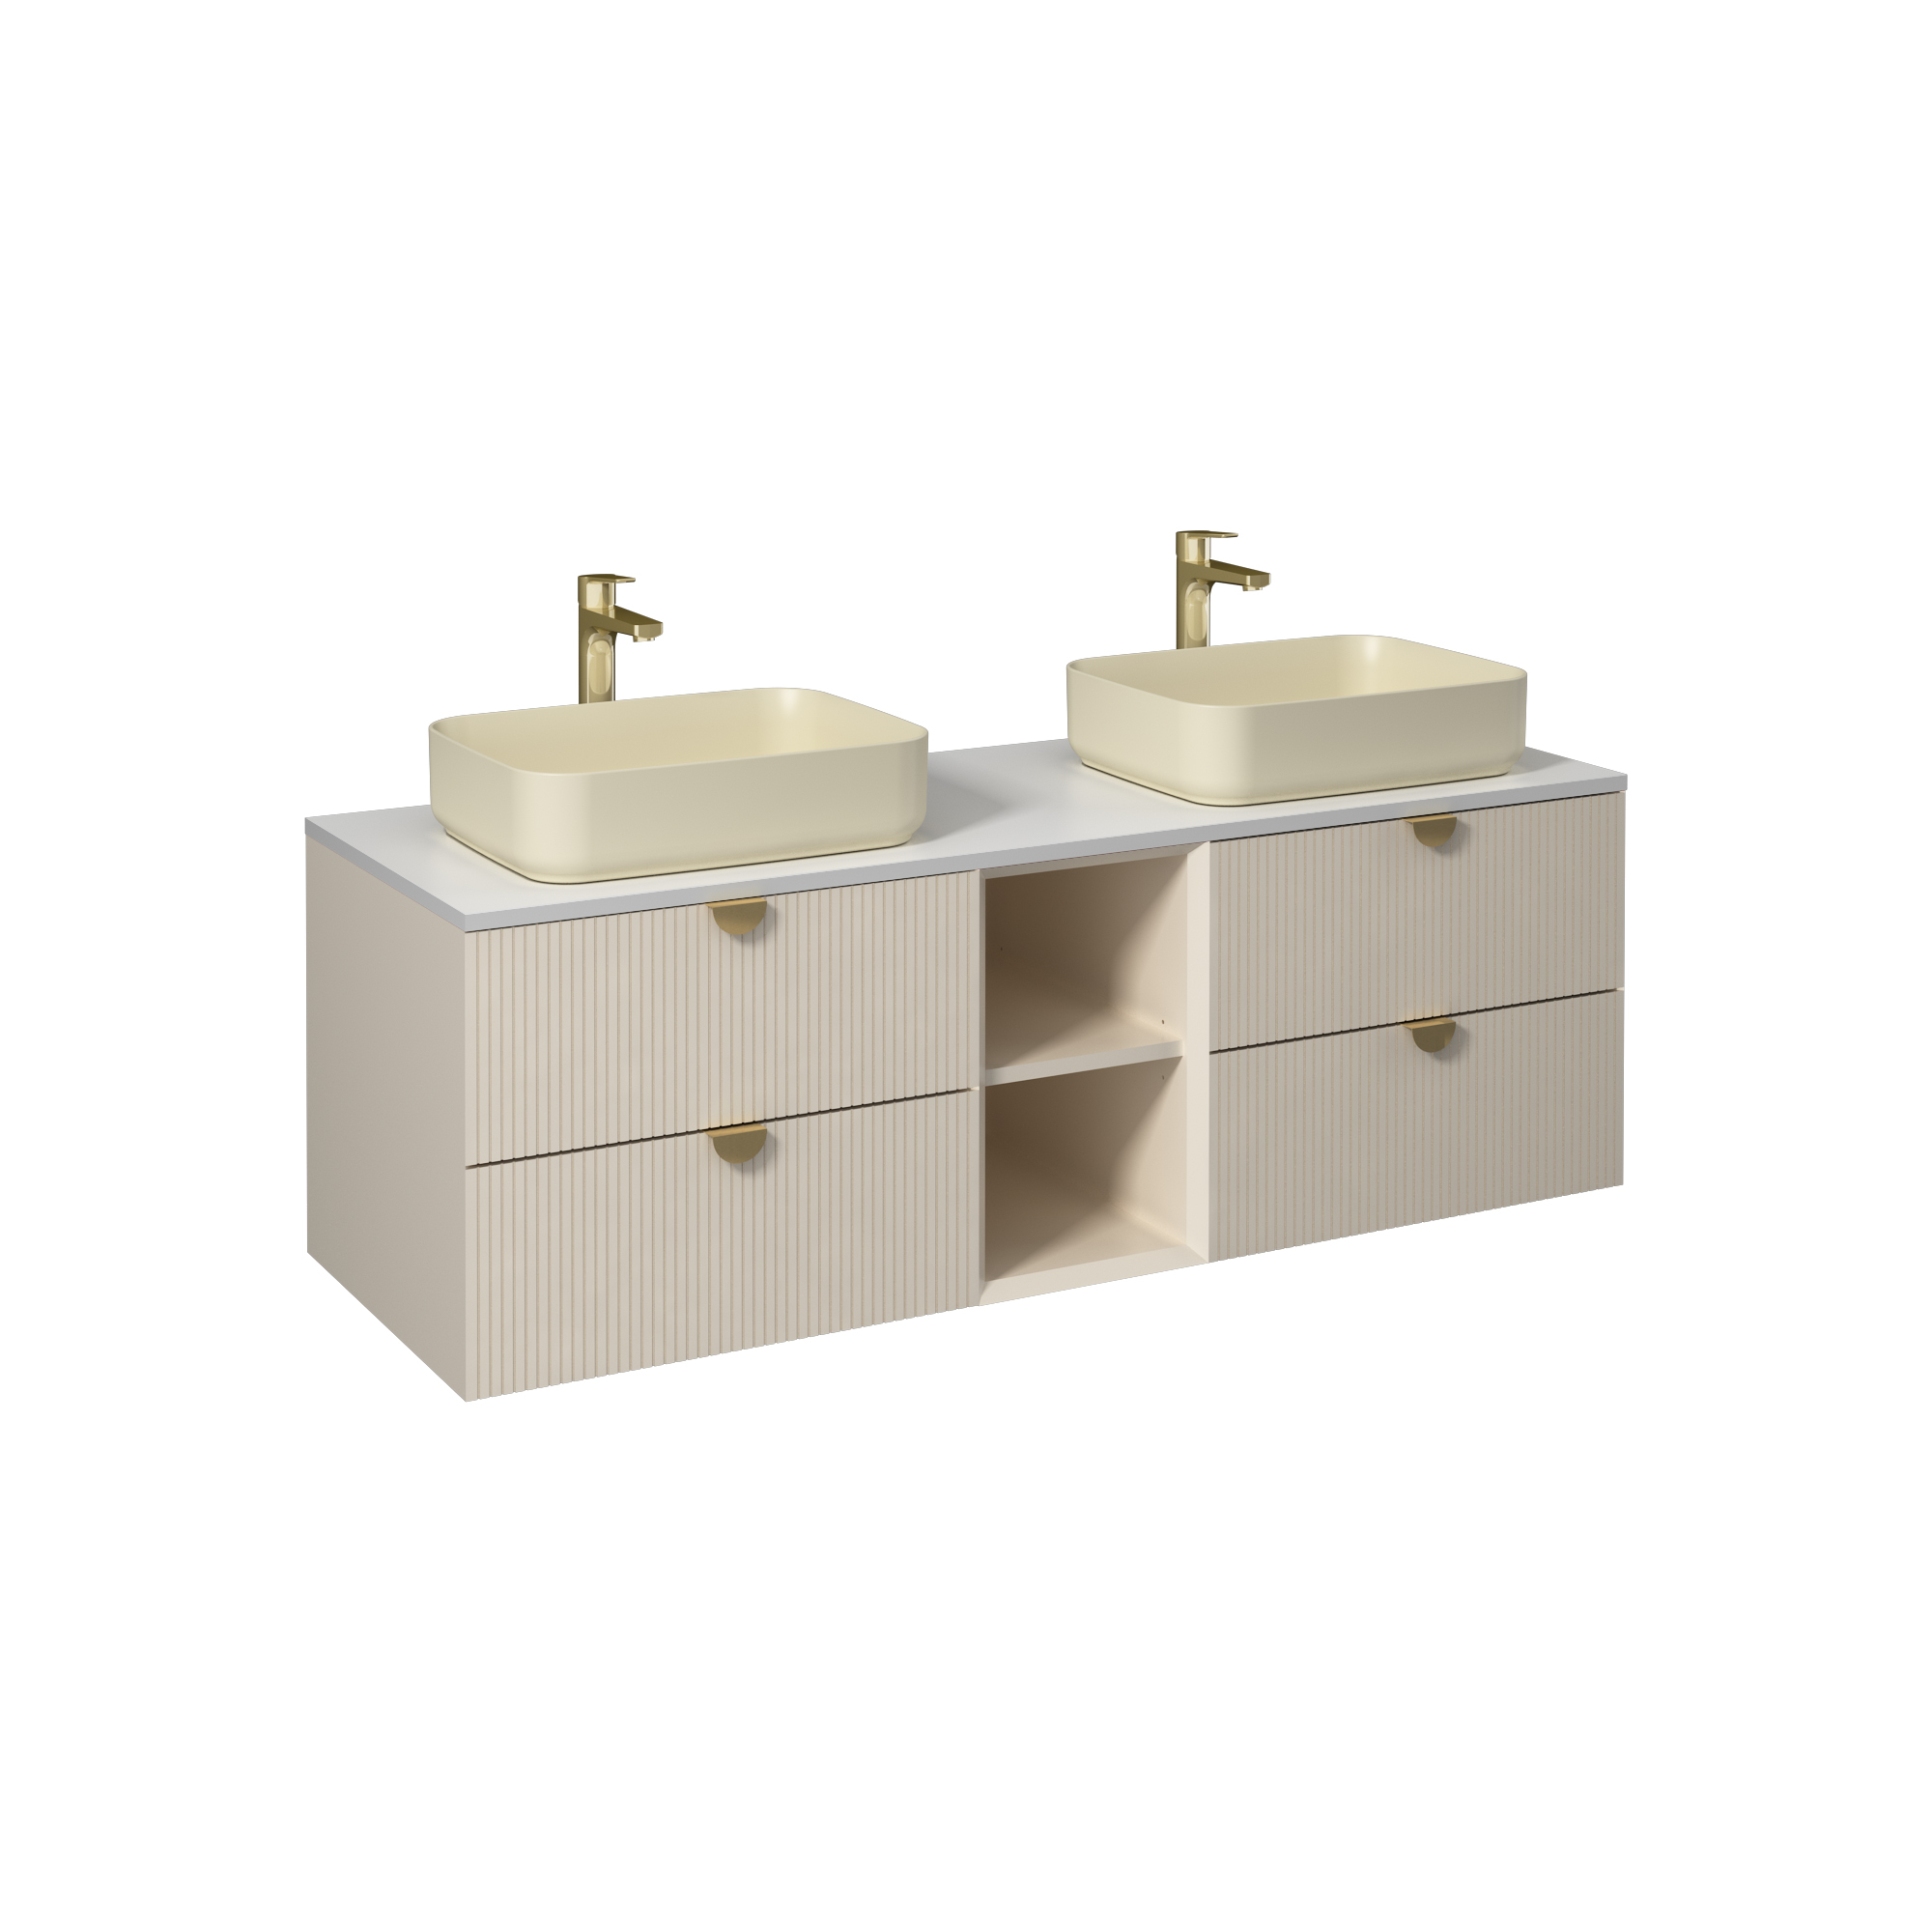 Infinity Washbasin Cabinet, Cream, Handle Bright Anodizing 47"